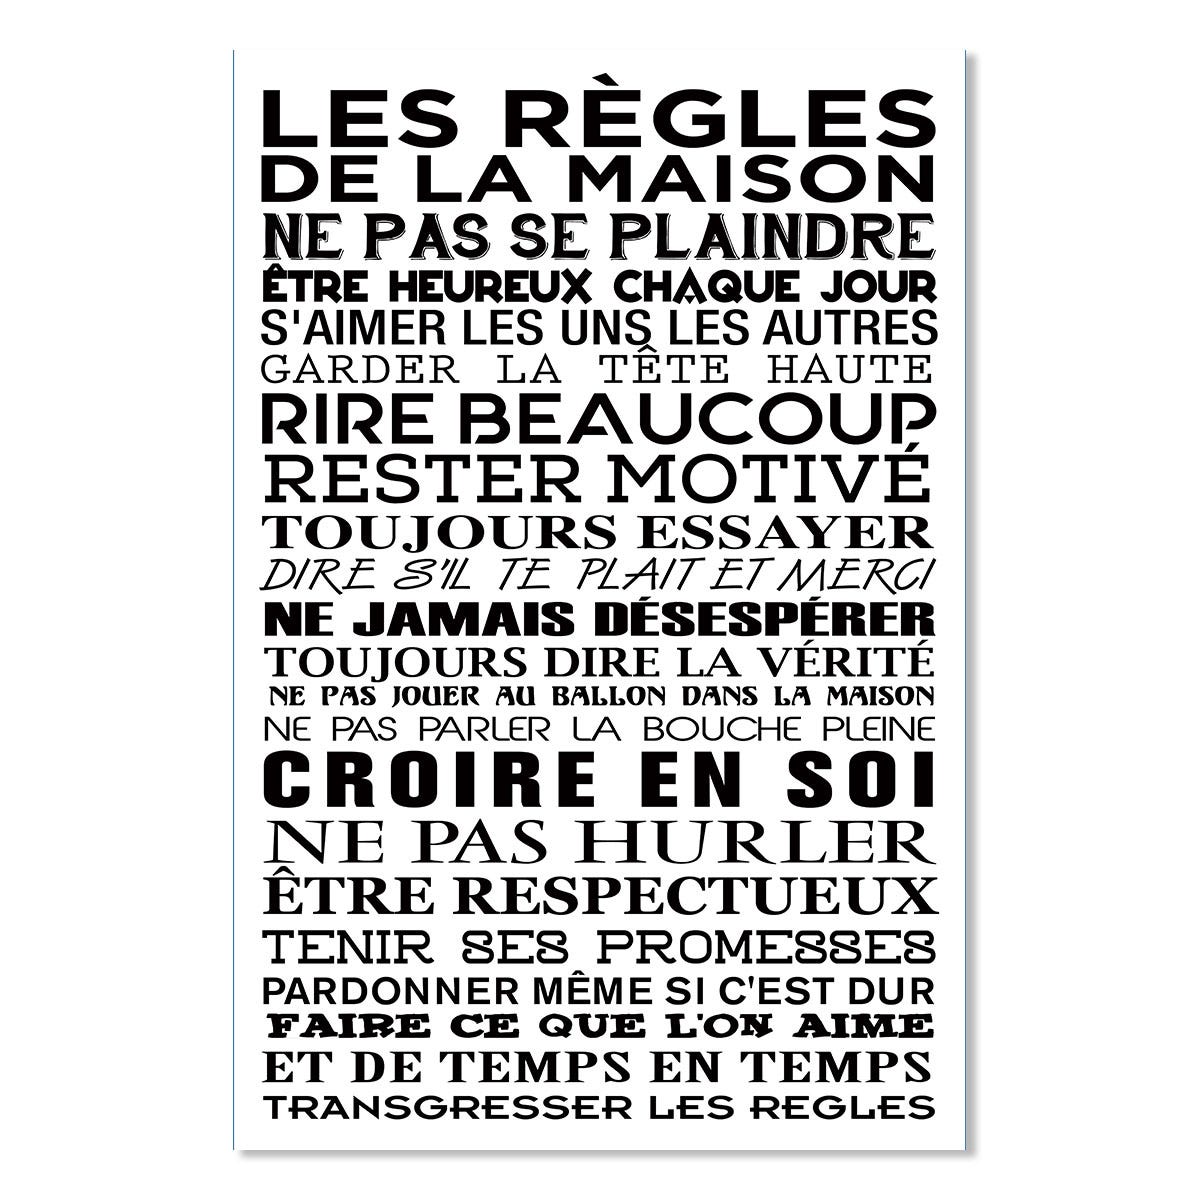 Affiche, Les règles des WC 1 - Affiche - 40x60cm - made in France